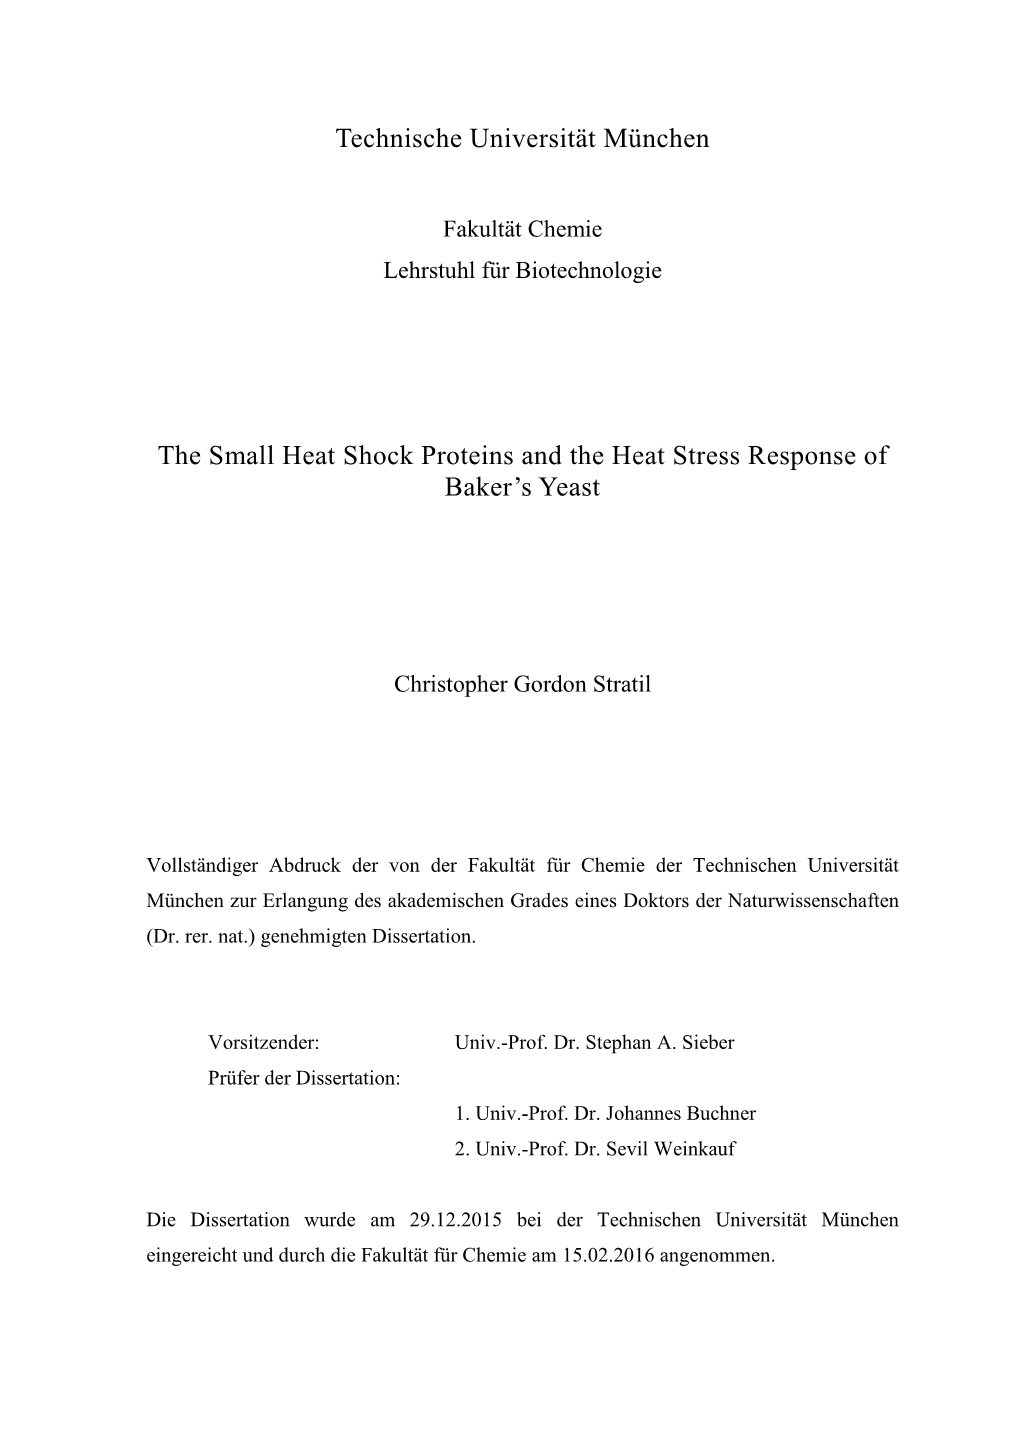 Technische Universität München the Small Heat Shock Proteins and The